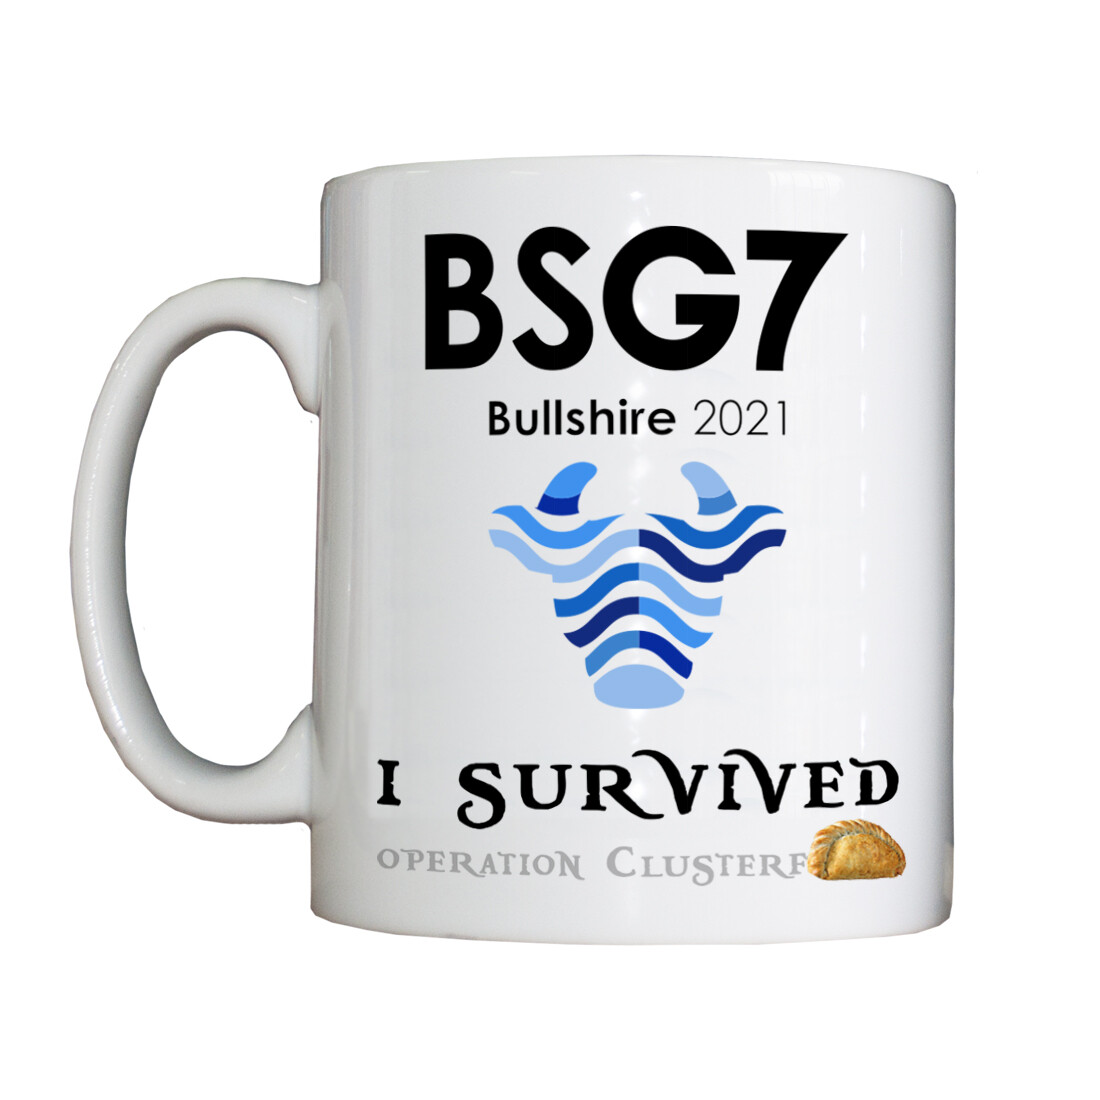 Personalised 'BSG7' Drinking Vessel (Mug)